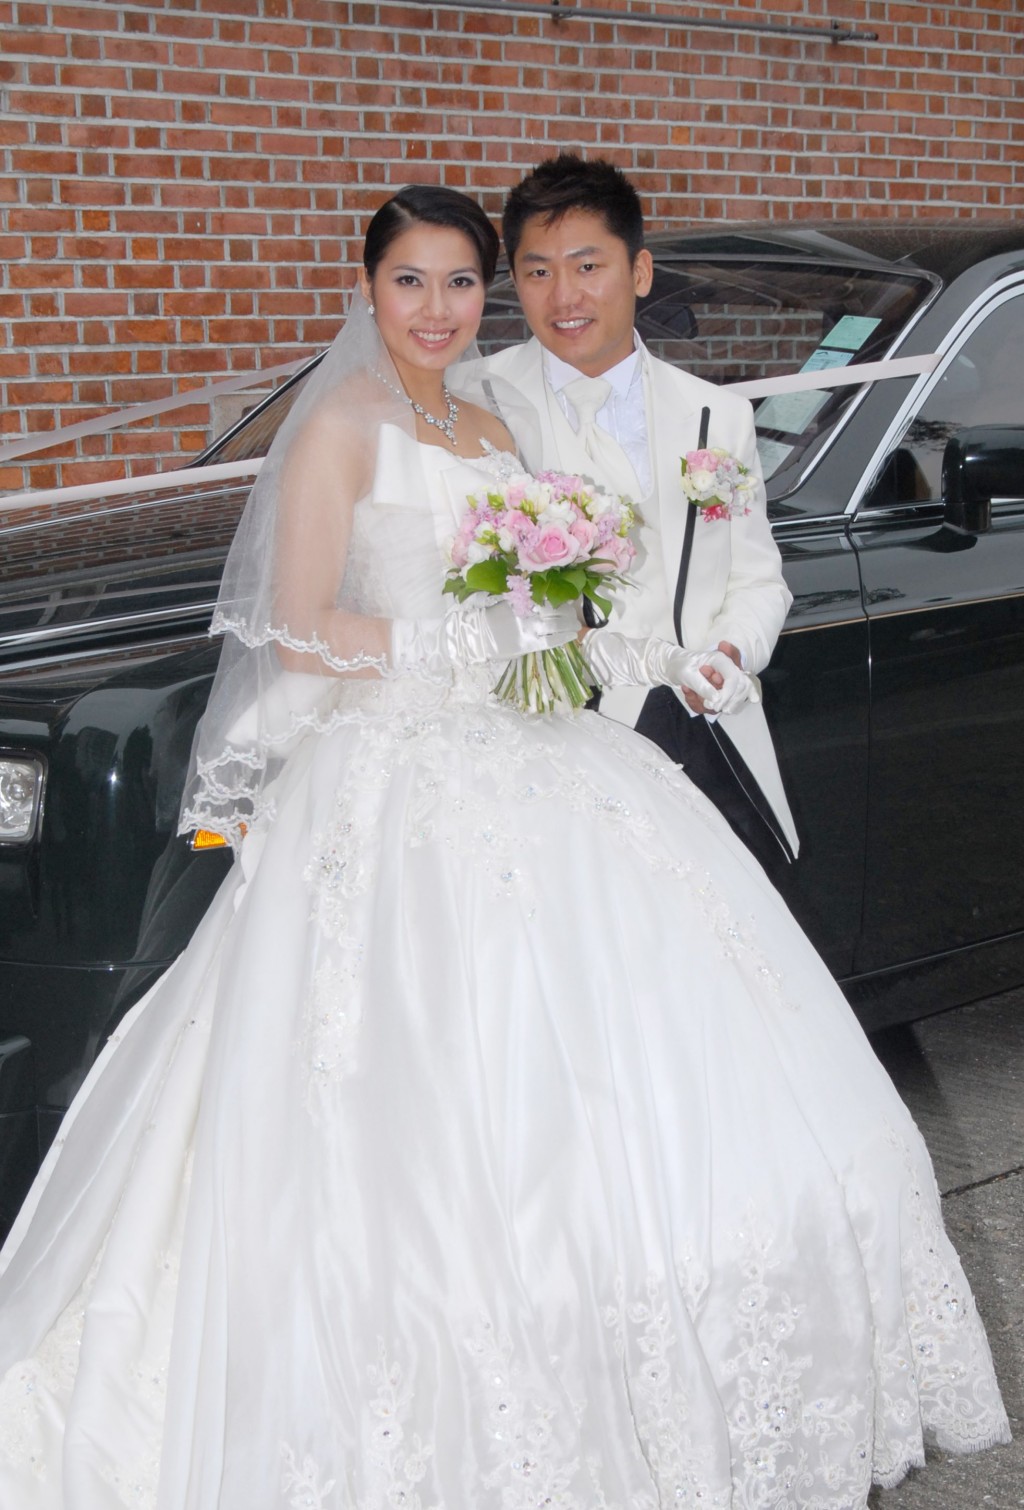 可嵐於2010年與從事飲食的圈外男友尤子威舉行婚禮。